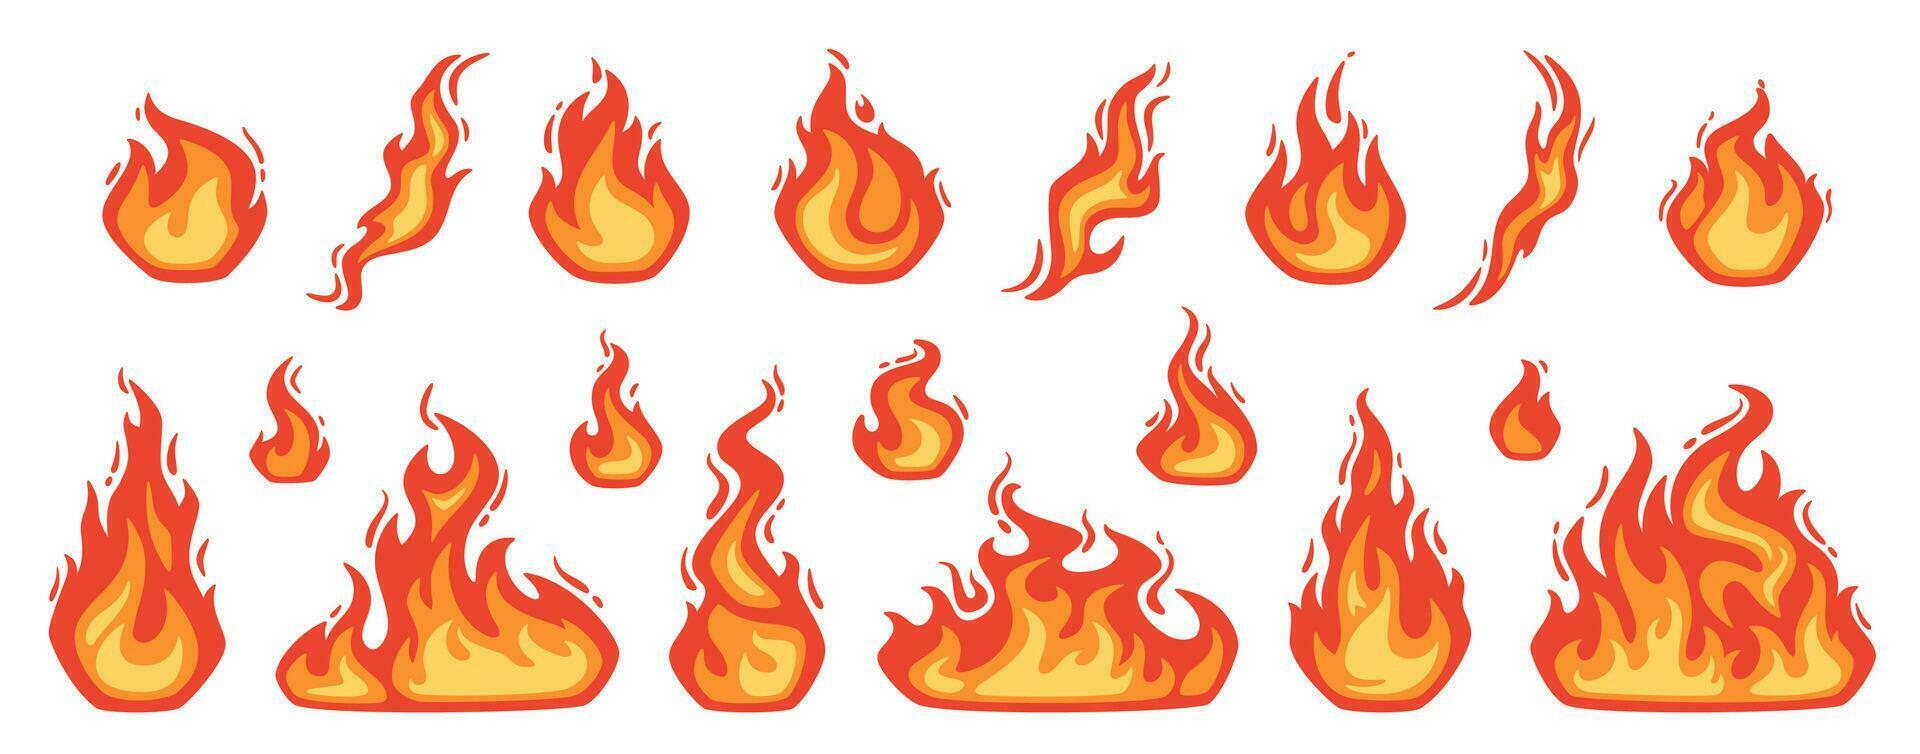 dibujos animados fuego. fuego de infernal bolas de fuego, rojo y amarillo hoguera, caliente fuego fatuo y hoguera, quemar fuerza. fuego del infierno, ardiente íconos aislado vector conjunto